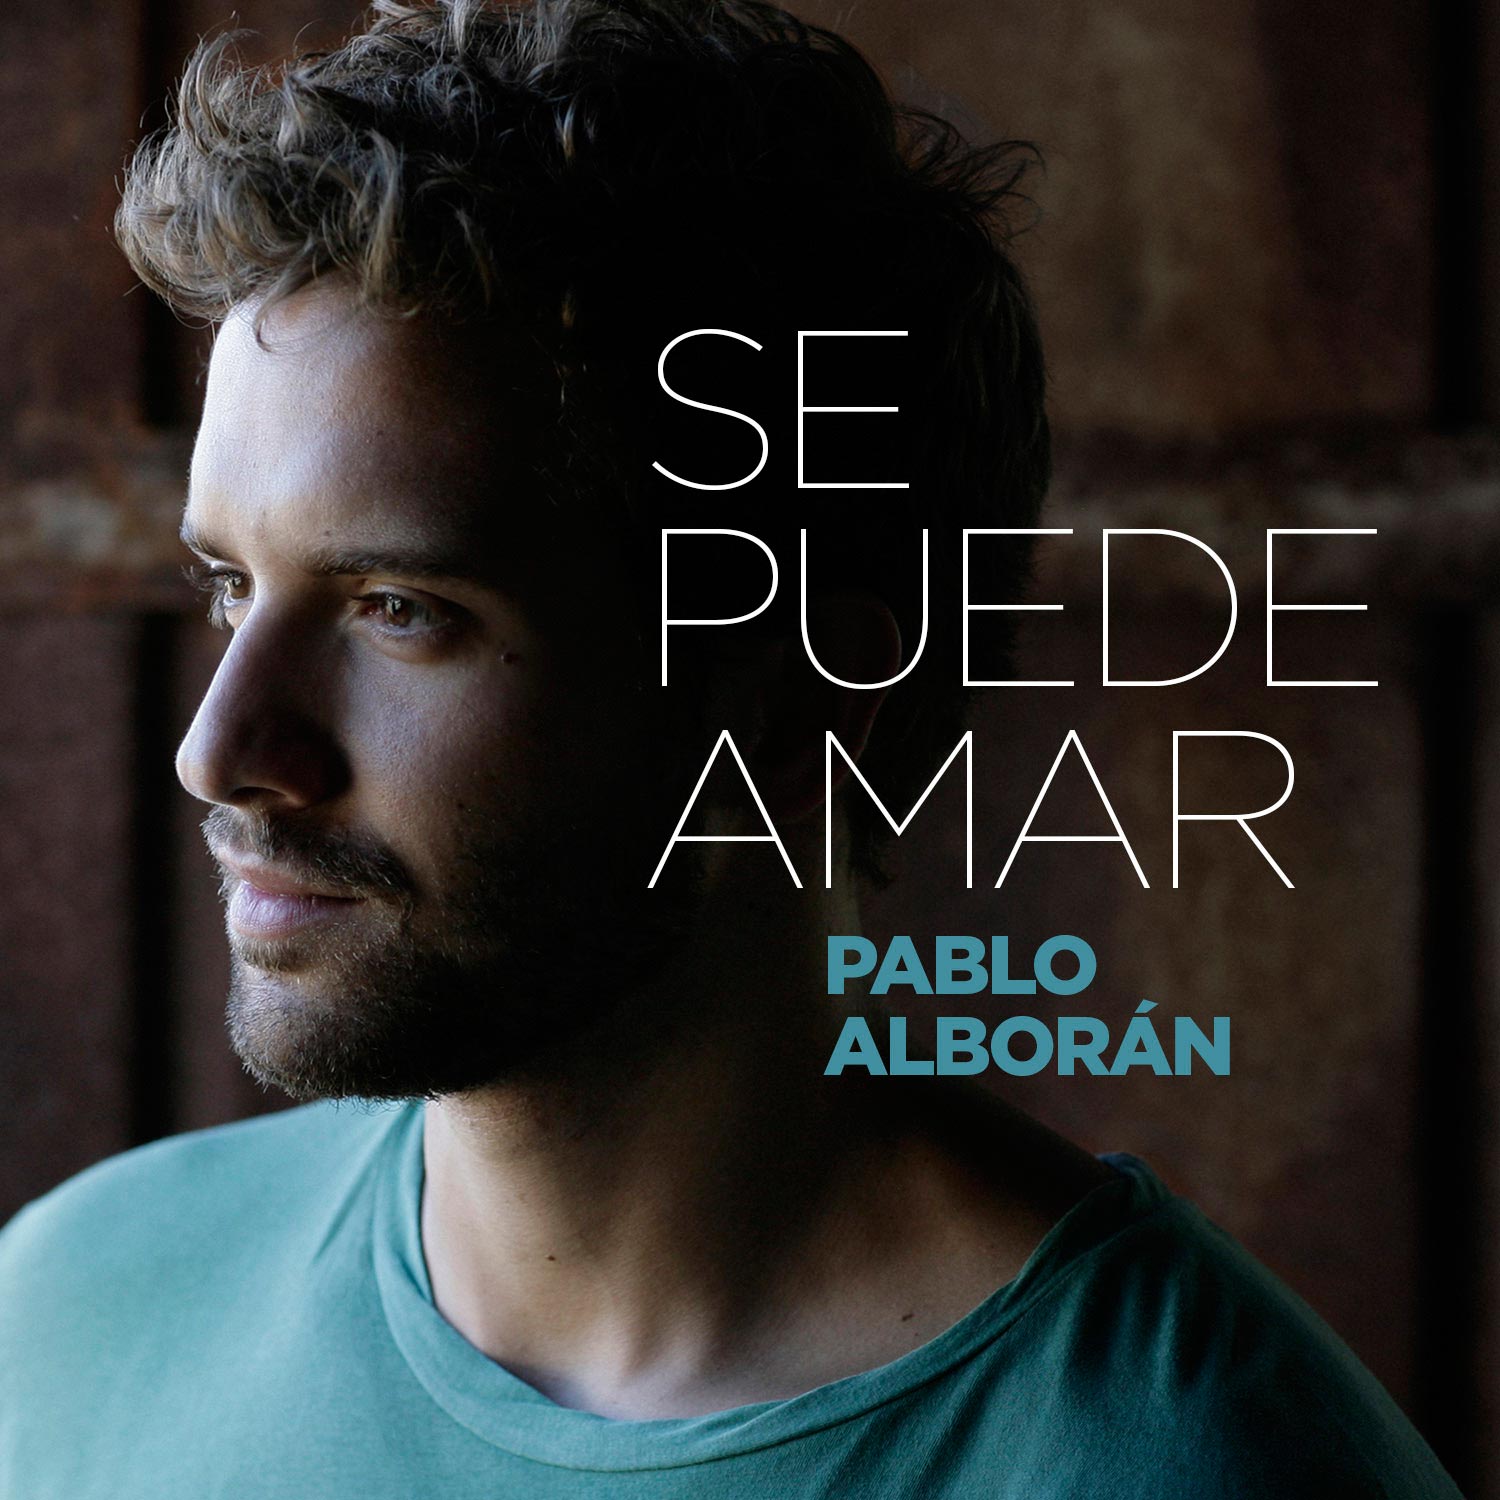 Pablo Alborán: Se puede amar, la portada de la canción